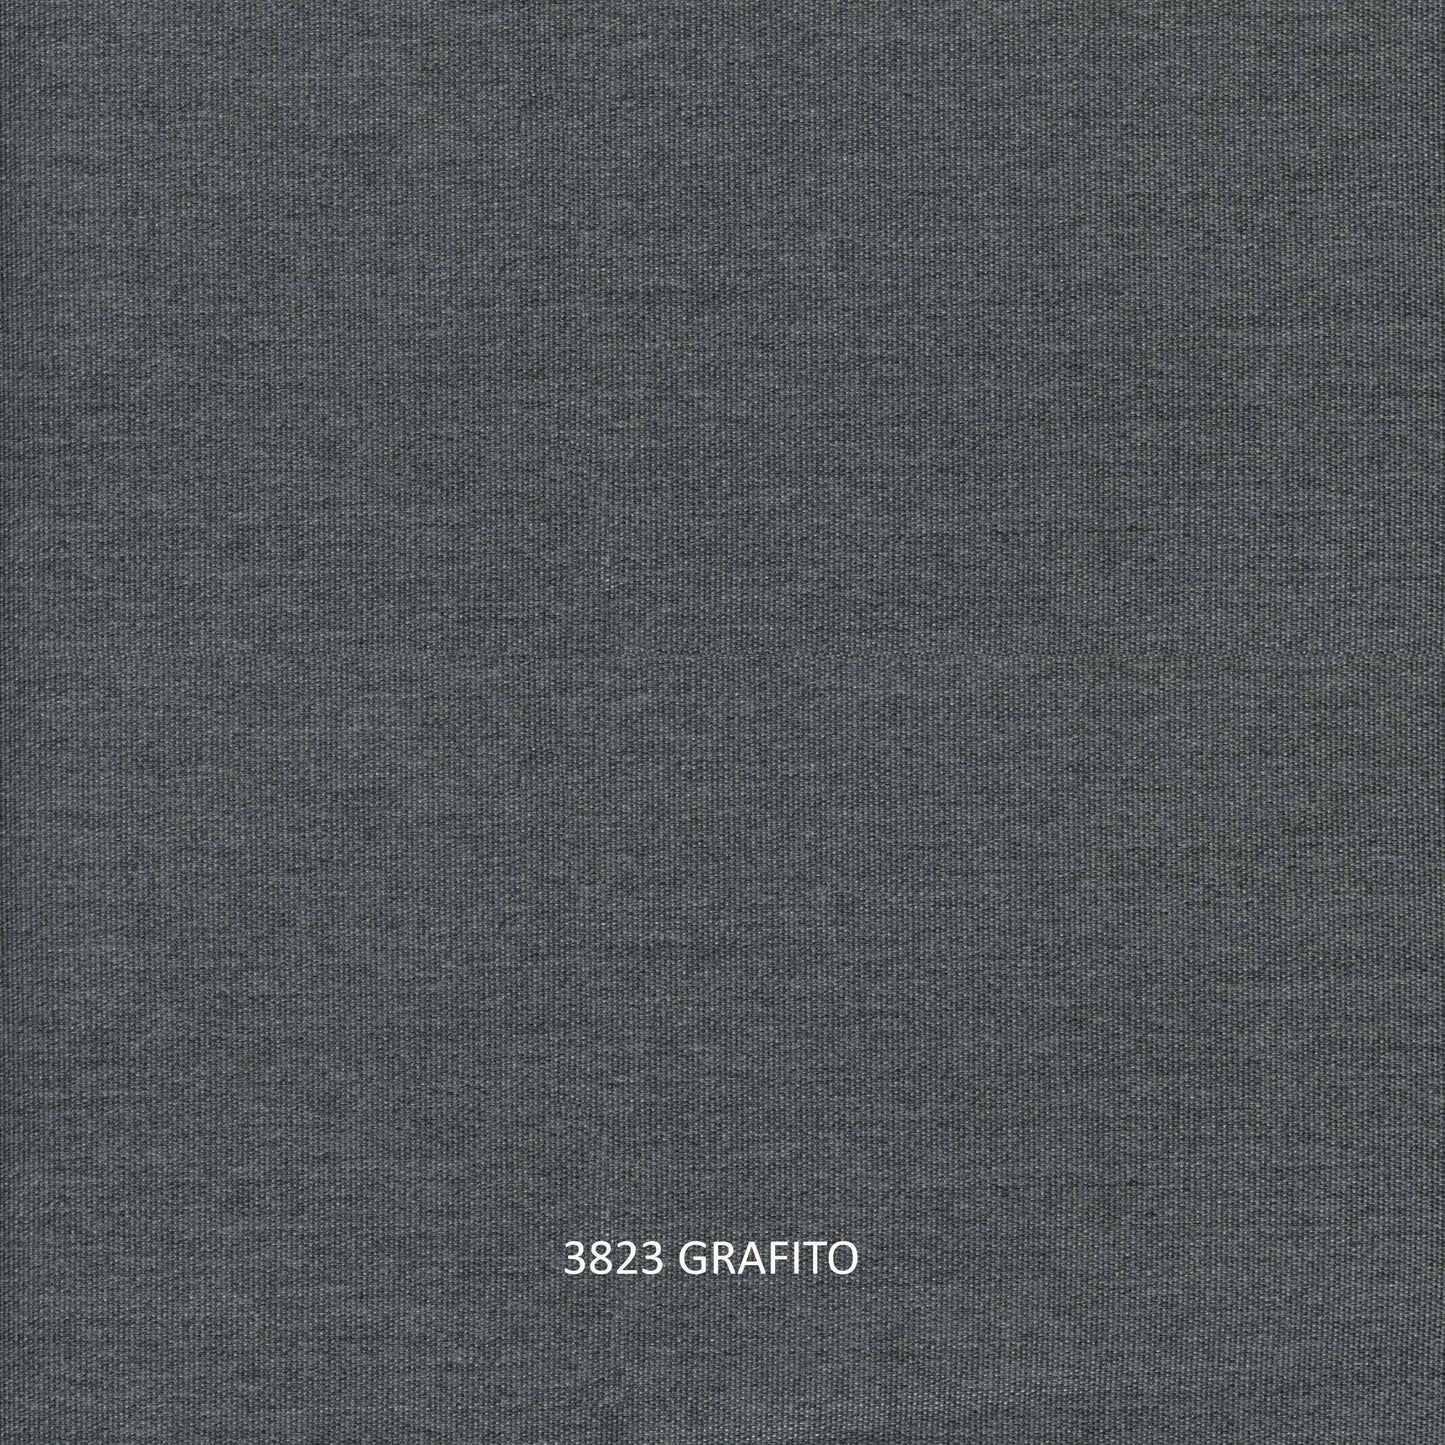 Milano Love Seat - PadioLiving - Milano Love Seat - Outdoor Love Seat - Dark Grey 21mm Strap - Grafito (£1715) - PadioLiving